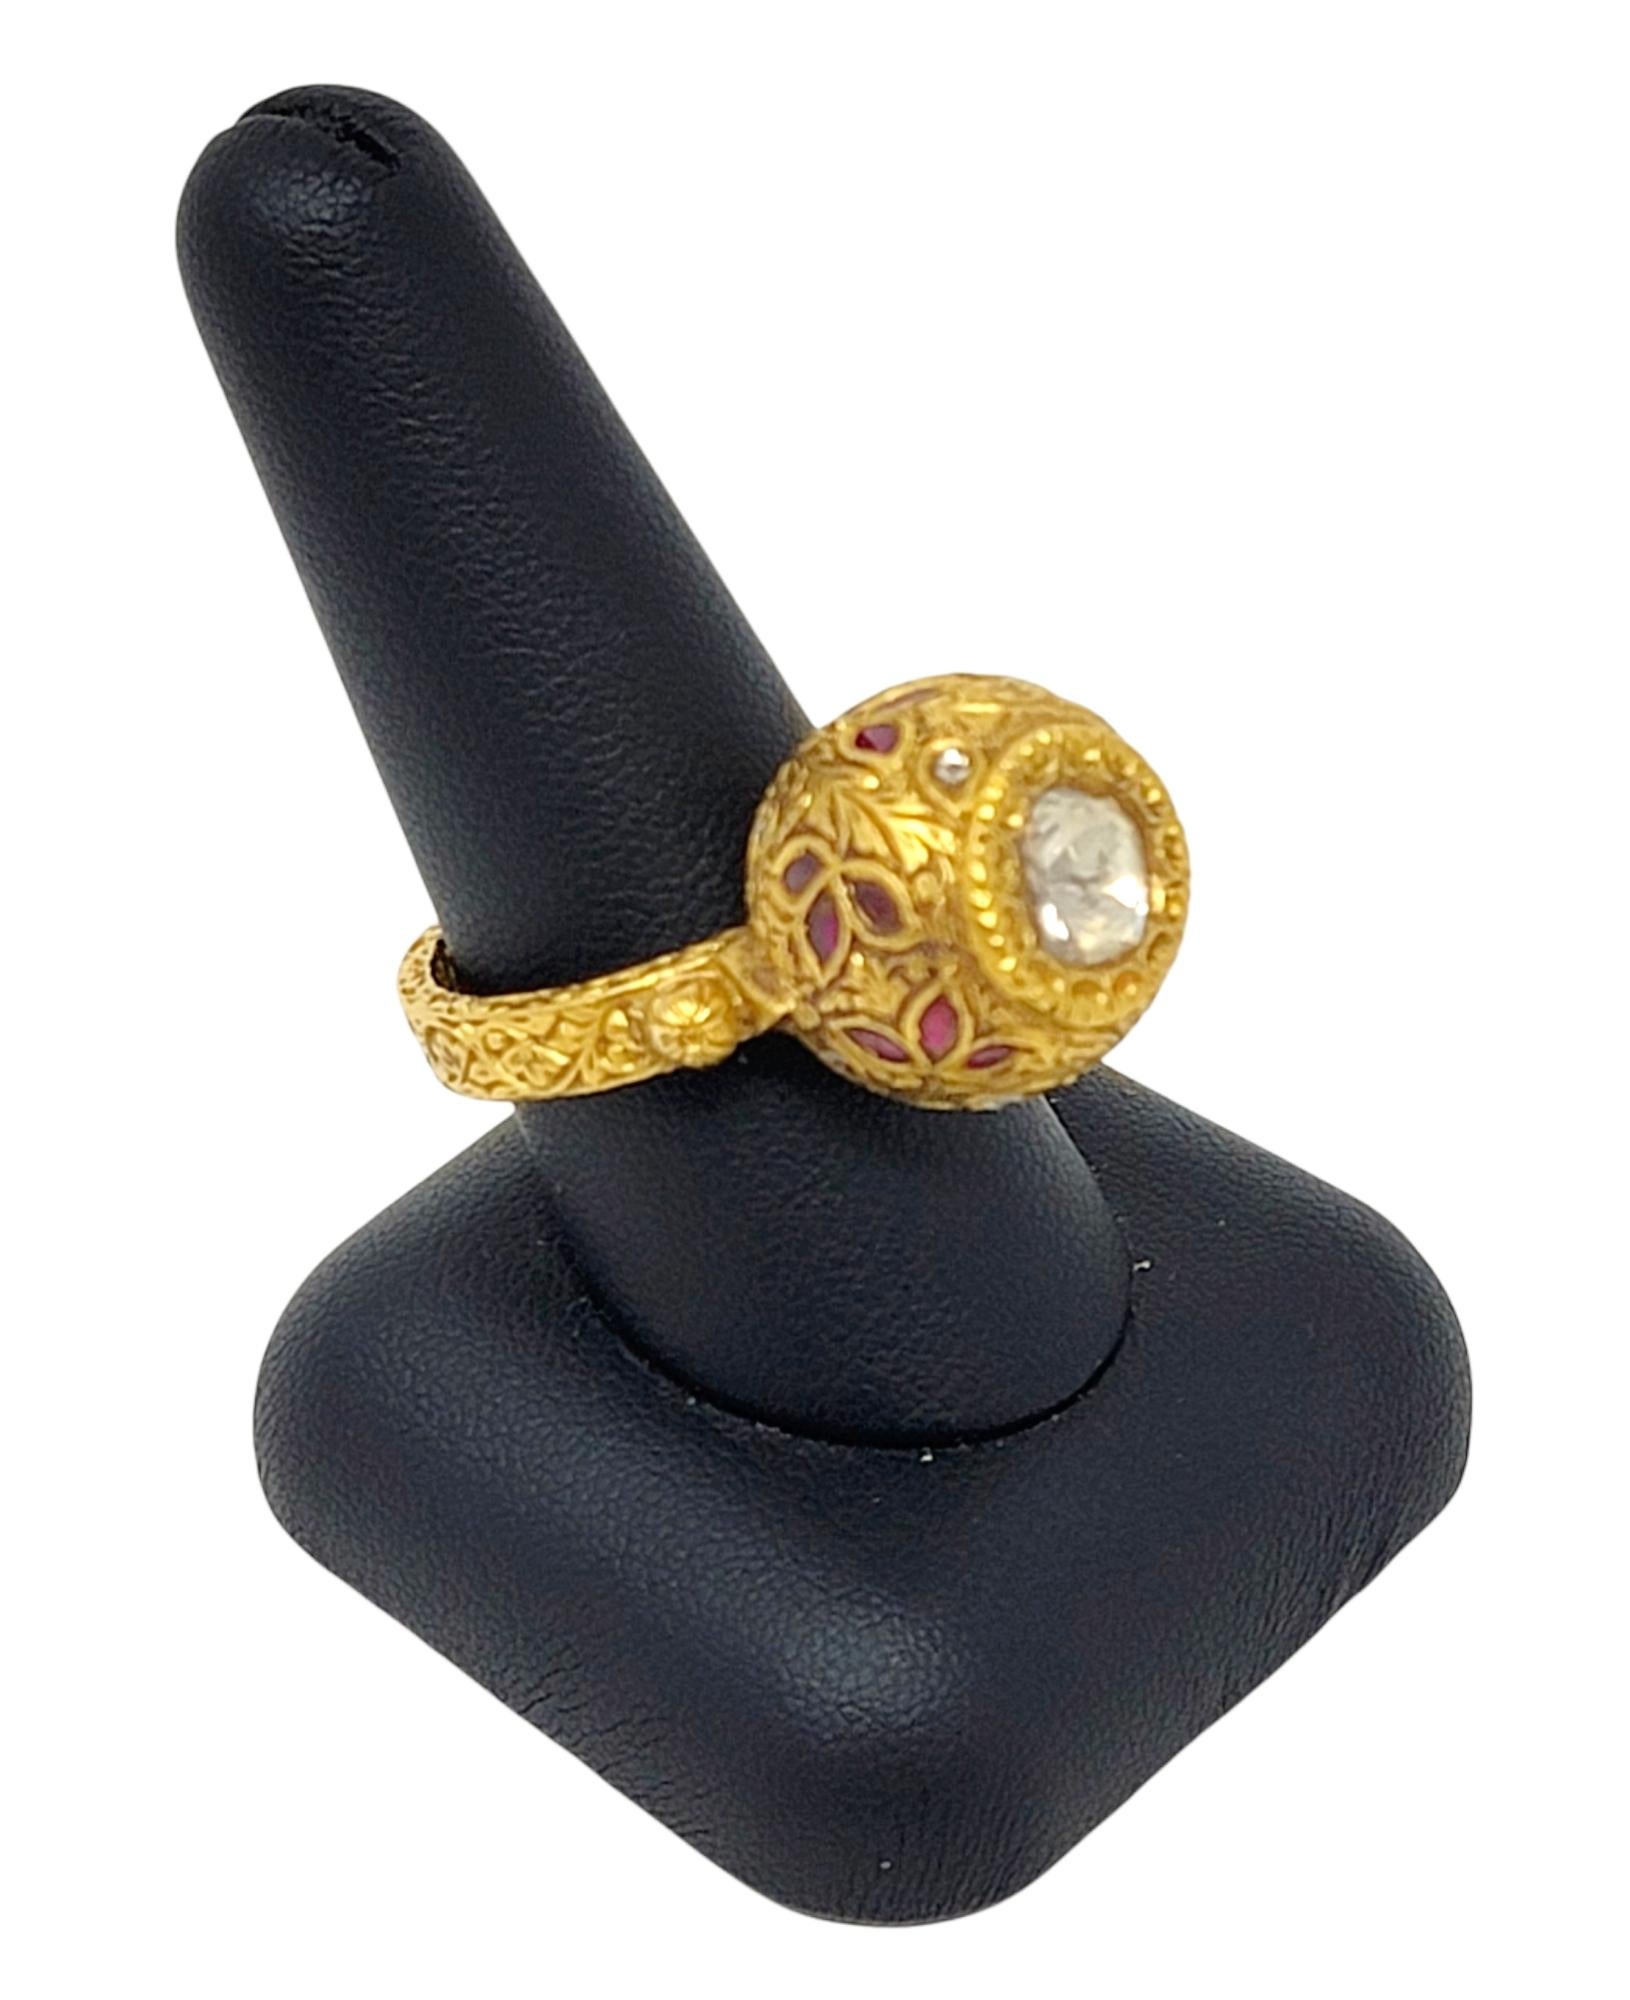 1.52 Carat Total Polki and Rose Cut Diamond Ring 21 Karat Yellow Gold Ornate For Sale 4